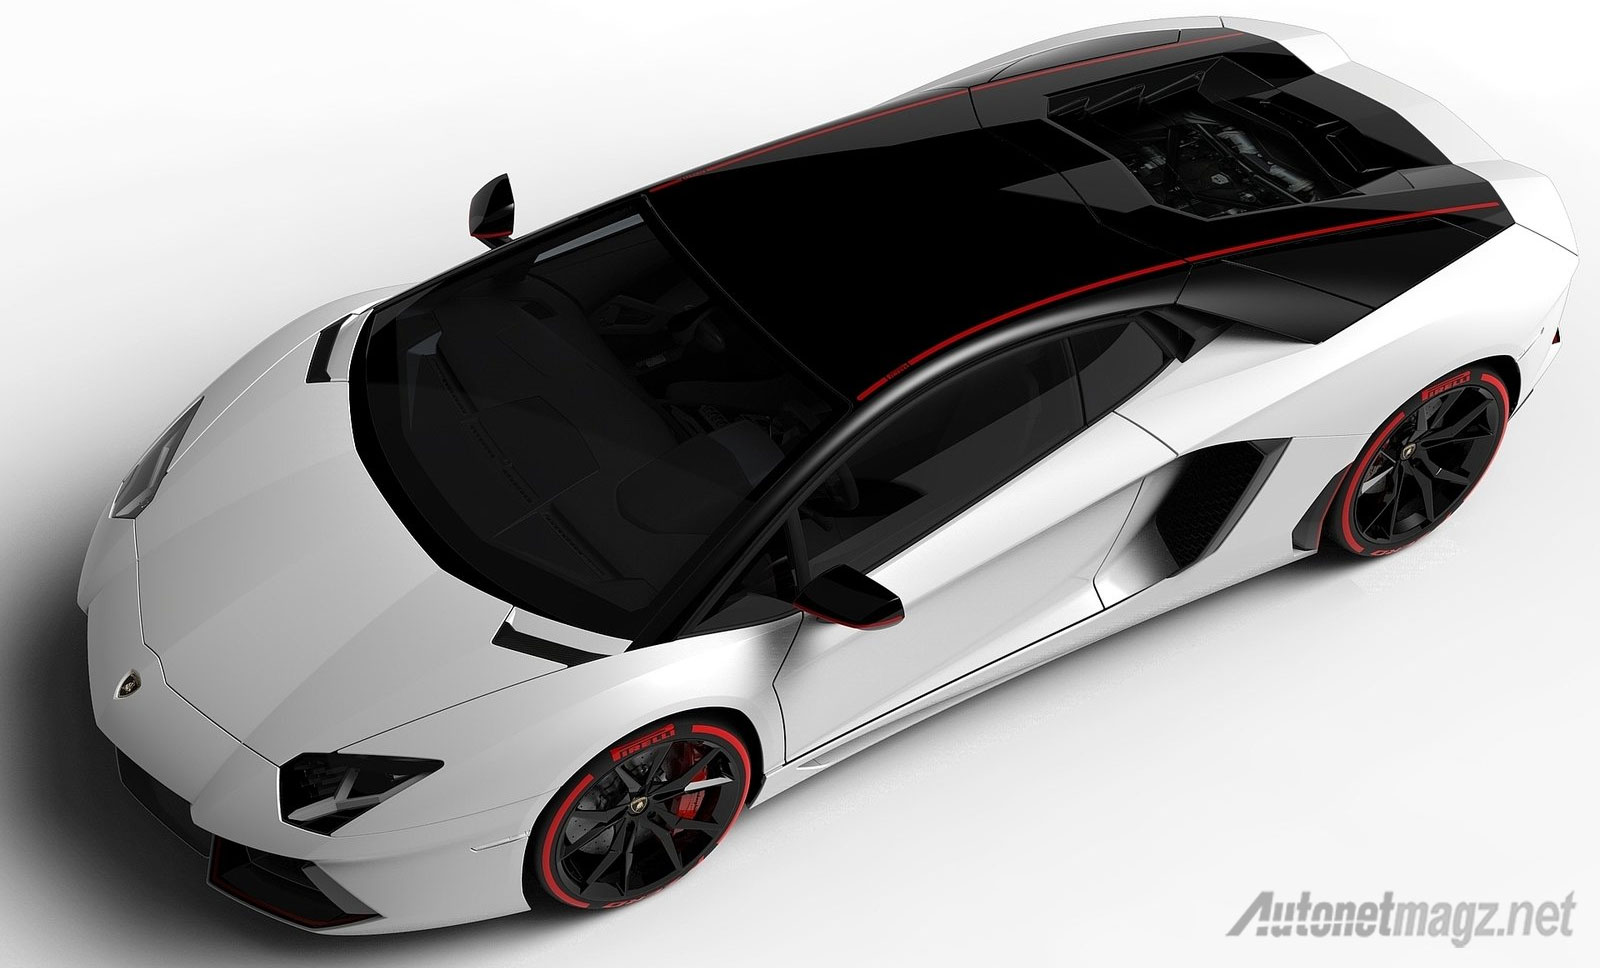 Berita, Wallpaper-Lamborghini-Aventador: Lamborghini dan Pirelli Rayakan Hubungan dengan Aventador Pirelli Edition